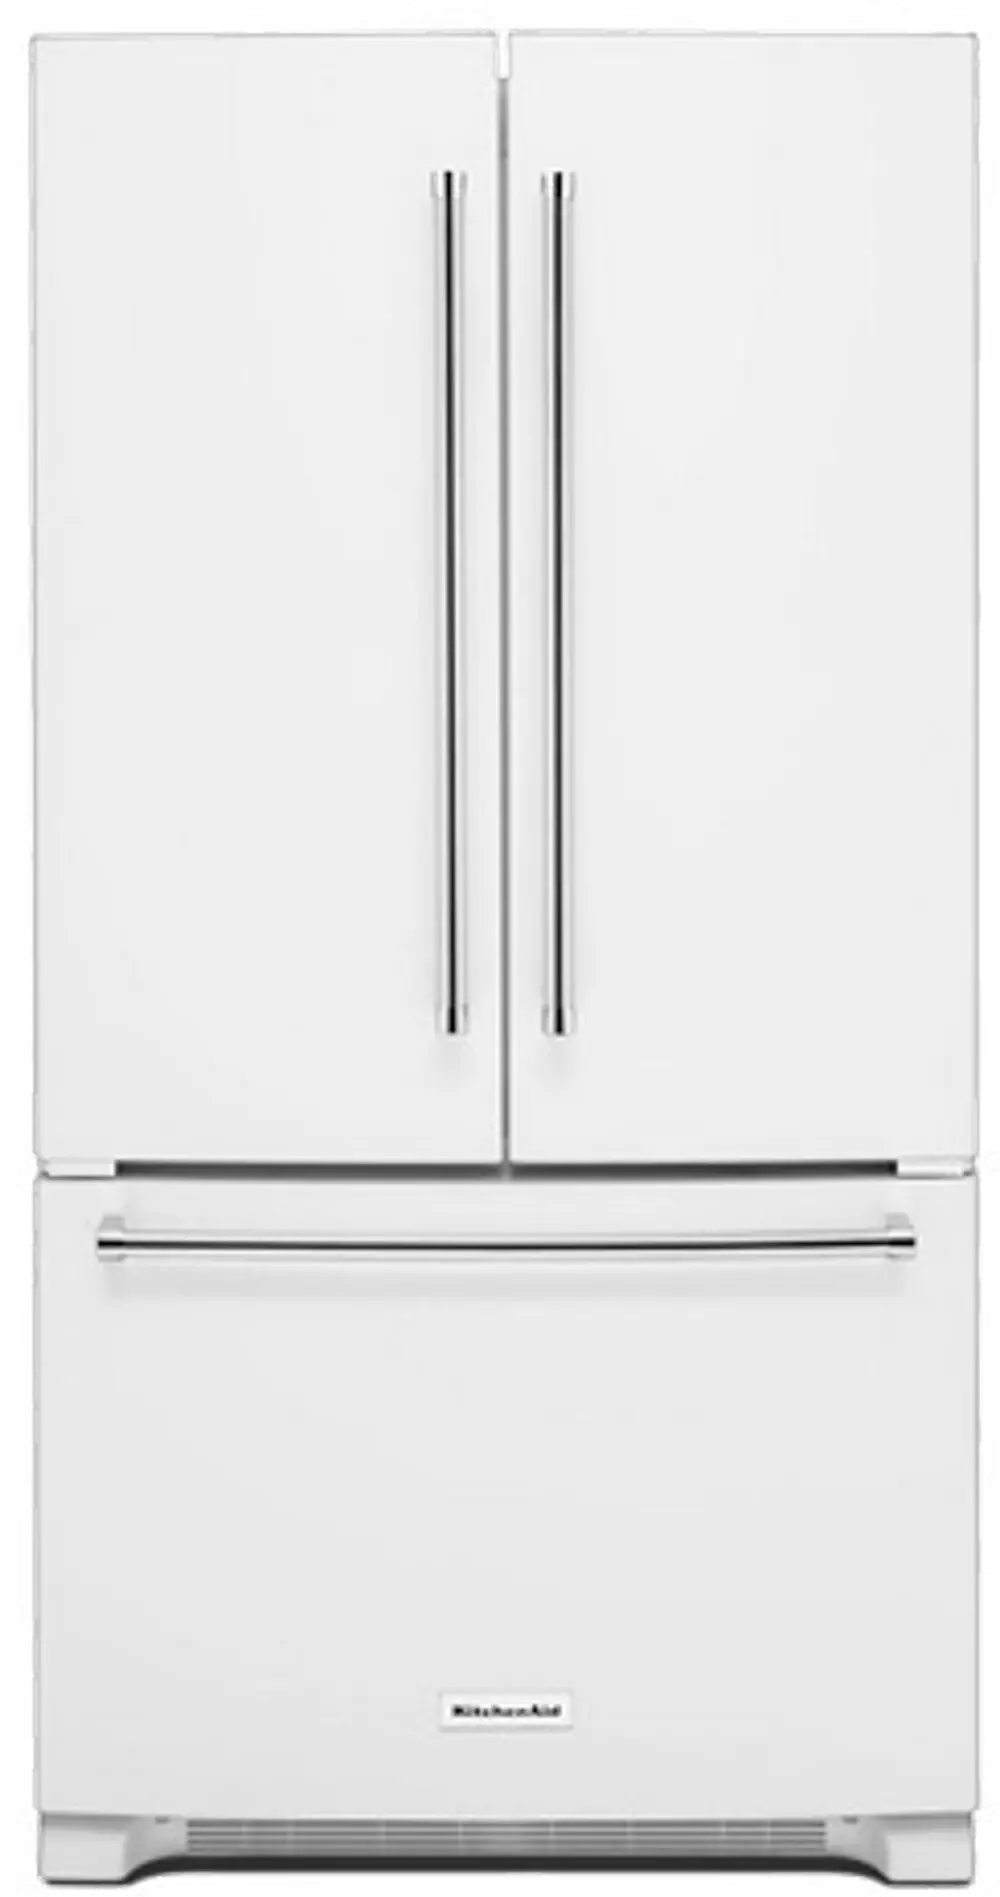 KRFC300EWH KitchenAid Counter Depth French Door Refrigerator - 20 cu. ft., 36 Inch White-1